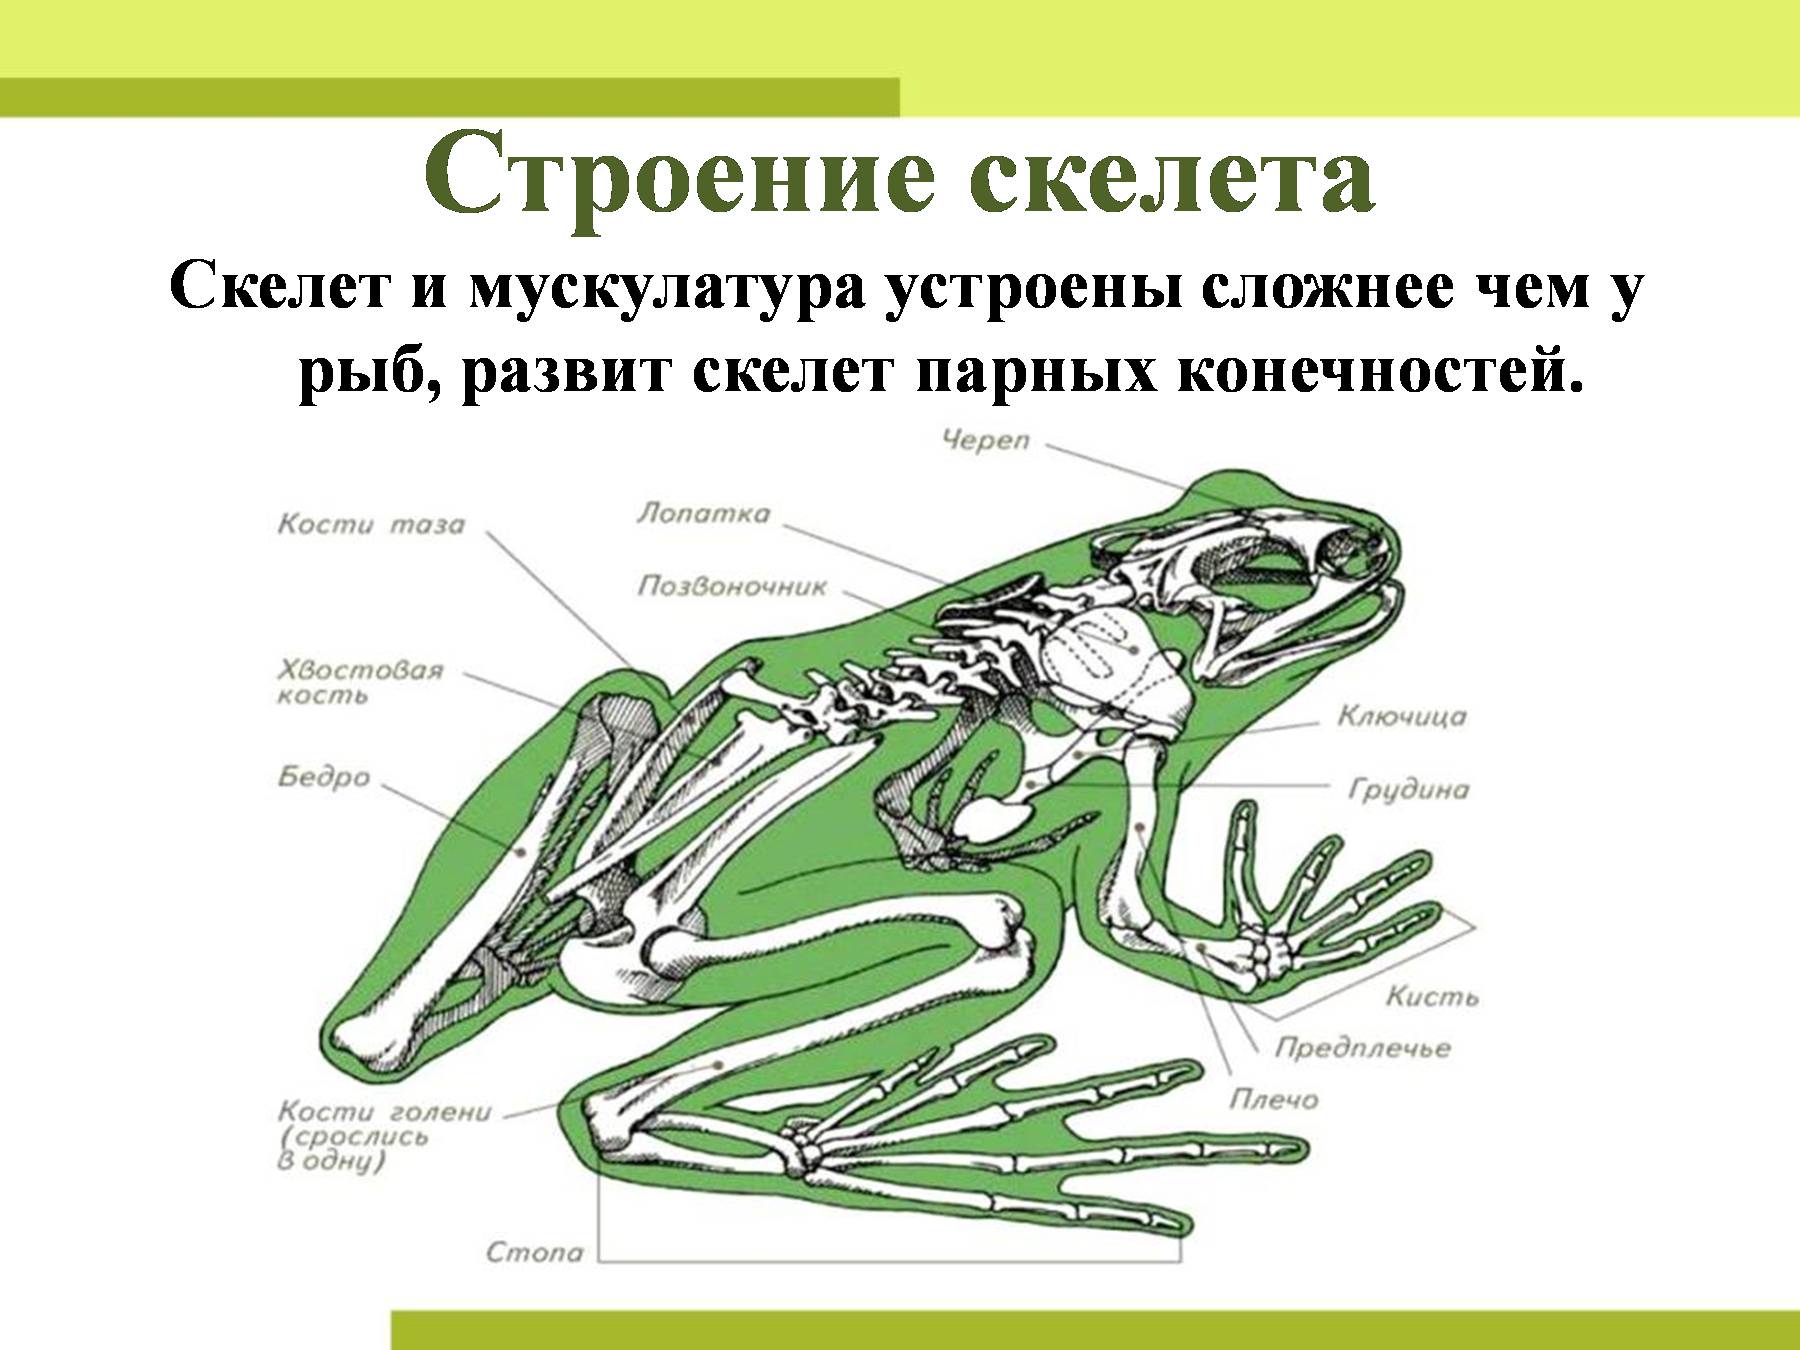 Кости передней конечности земноводных. Скелет конечностей амфибий. Скелет конечностей земноводных. Строение скелета амфибий. Земноводные строение скелета задних конечностей.